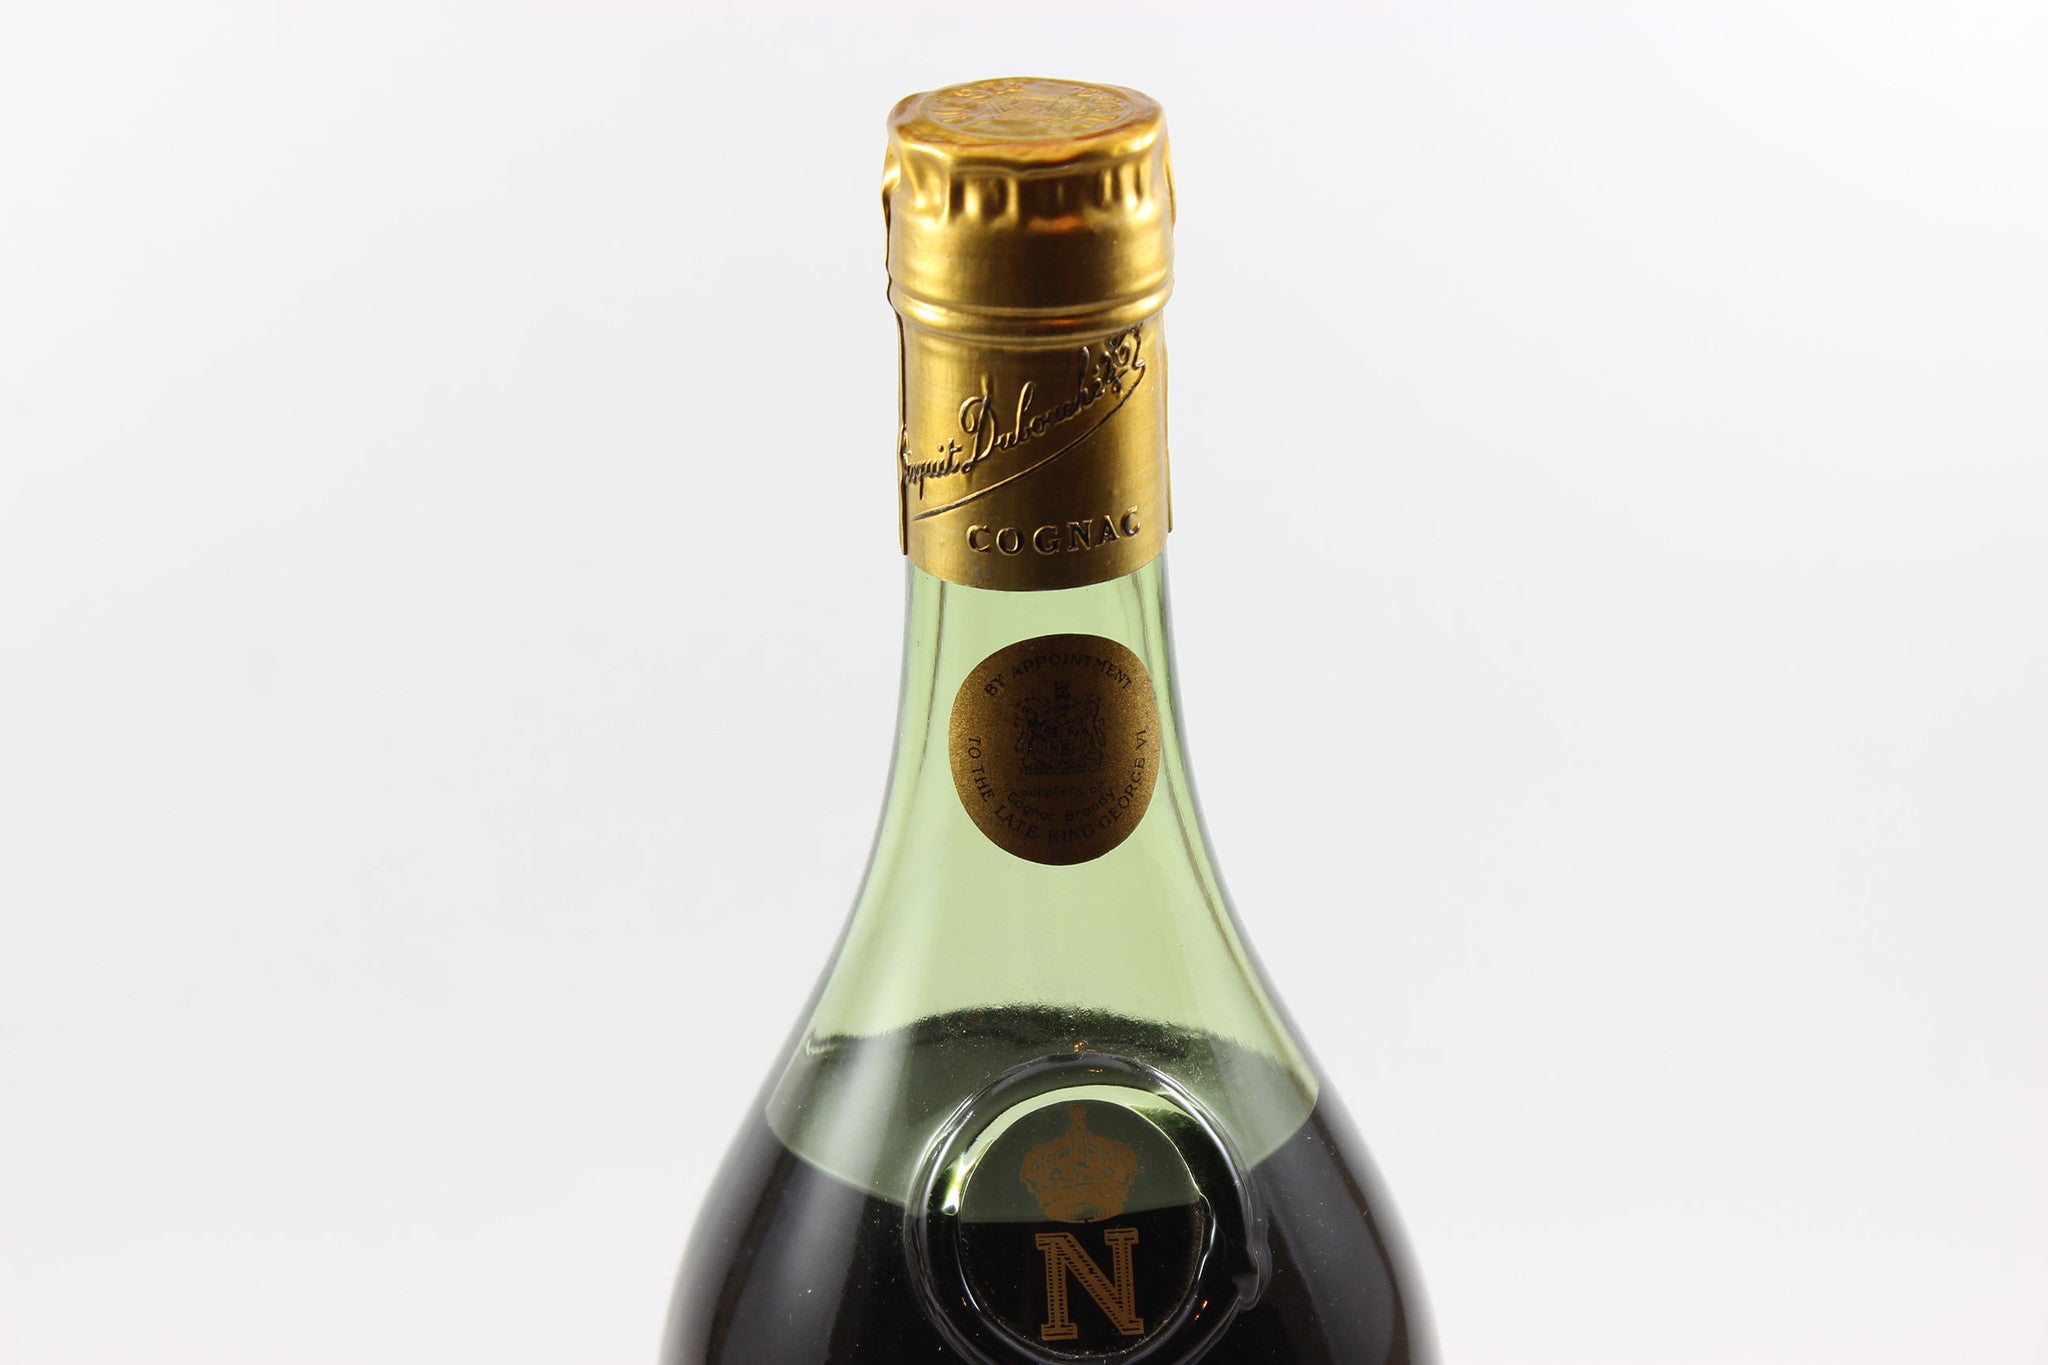 Bisquit Dubouché &amp; Co. Grande Fine Champagne Cognac, Extra Vieille